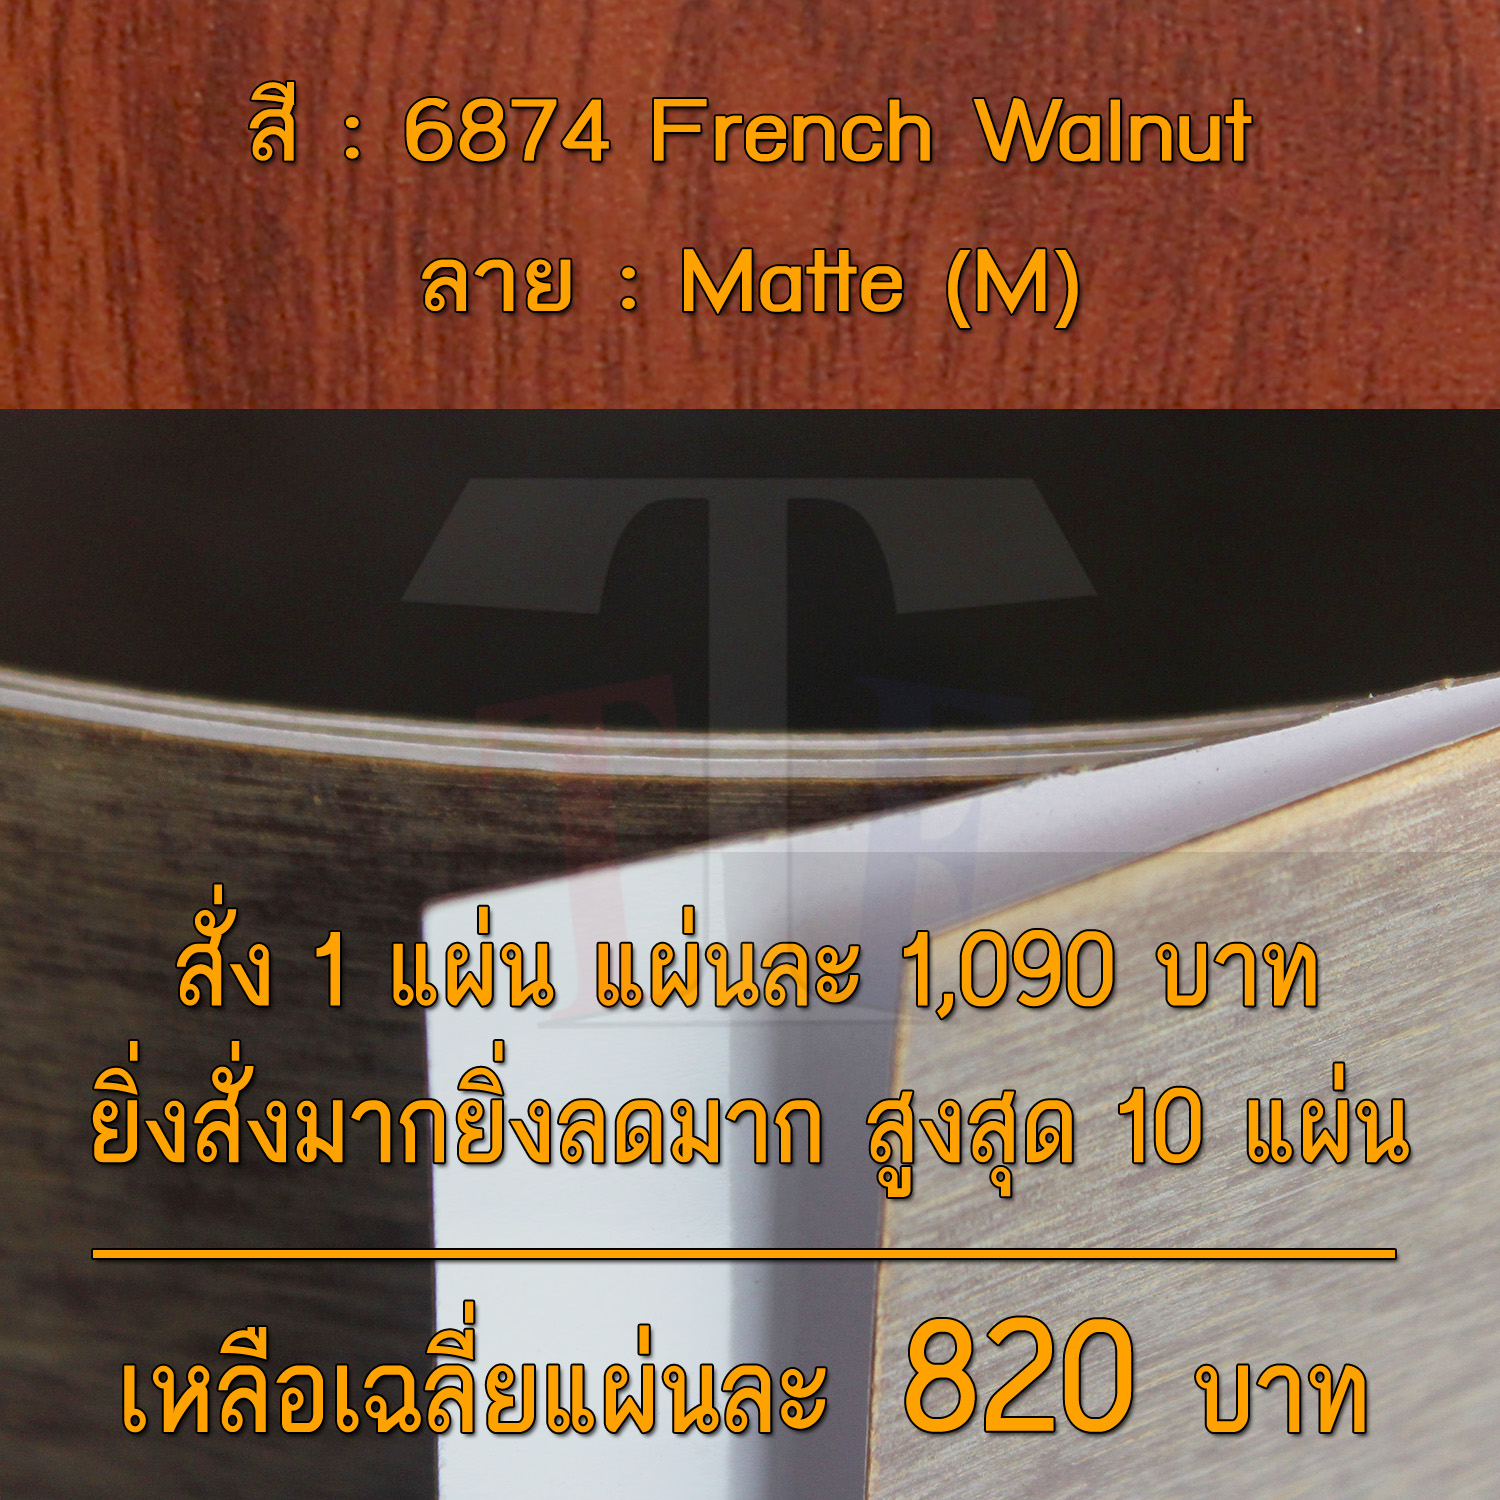 แผ่นโฟเมก้า แผ่นลามิเนต ยี่ห้อ TD Board ลายไม้วอลนัท รหัส 6874 French Walnut พื้นผิวลาย Matte (M) ขนาด 1220 x 2440 มม. หนา 0.70 มม. ใช้สำหรับงานตกแต่งภายใน งานปิดผิวเฟอร์นิเจอร์ ผนัง และอื่นๆ เพื่อเพิ่มความสวยงาม formica laminate 6874M